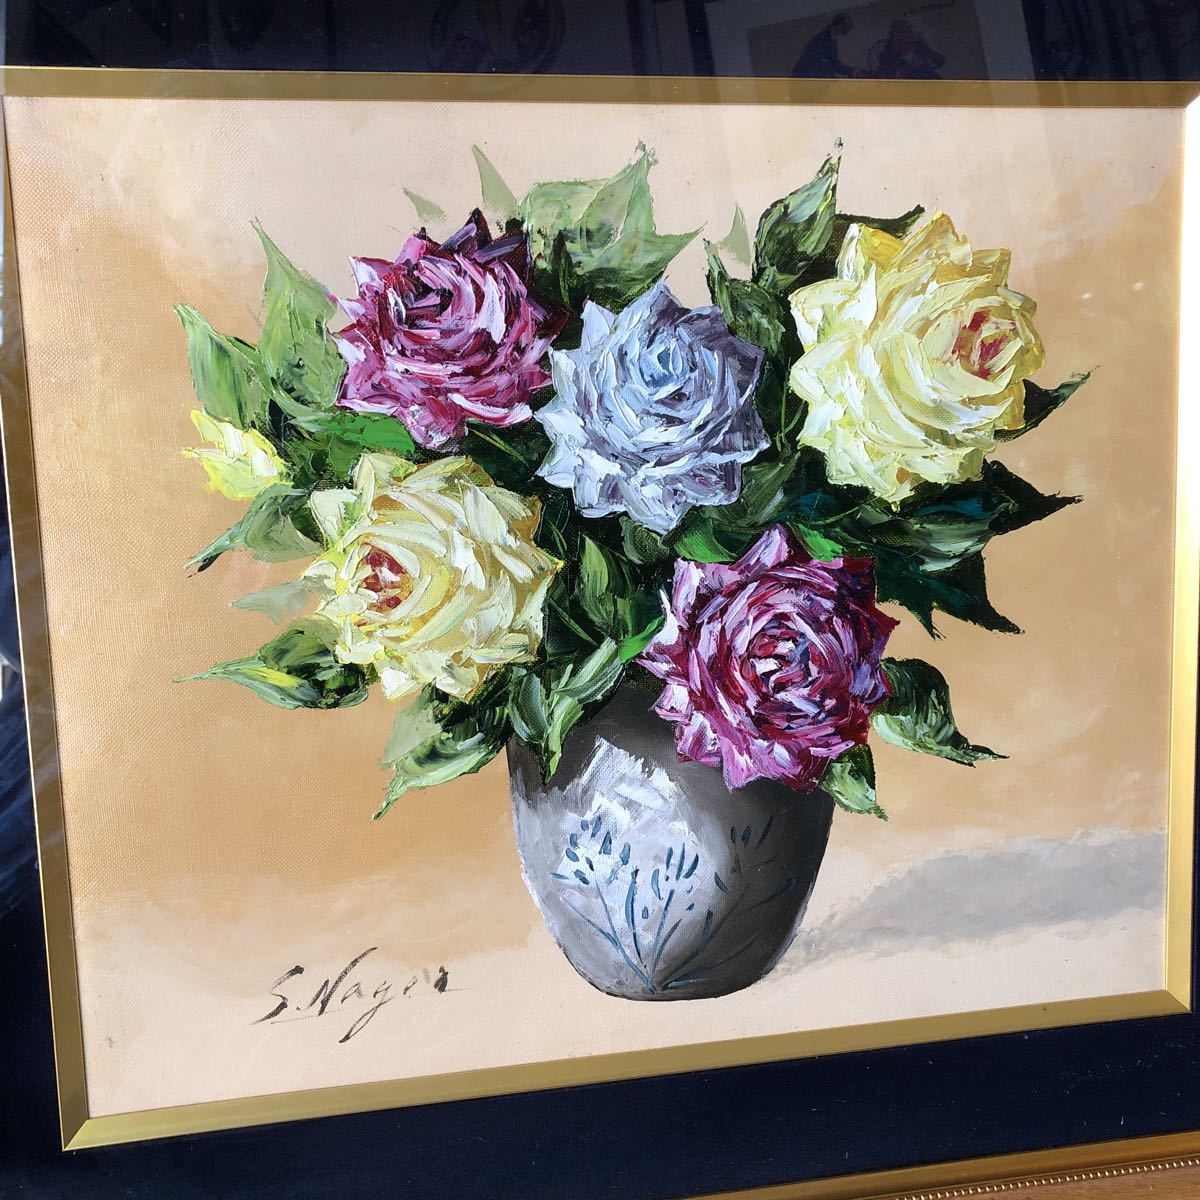 Pintura al óleo de Toshio Nagao Pintura de rosas Fecha desconocida Para los amantes de las flores, Cuadro, Pintura al óleo, Naturaleza, Pintura de paisaje